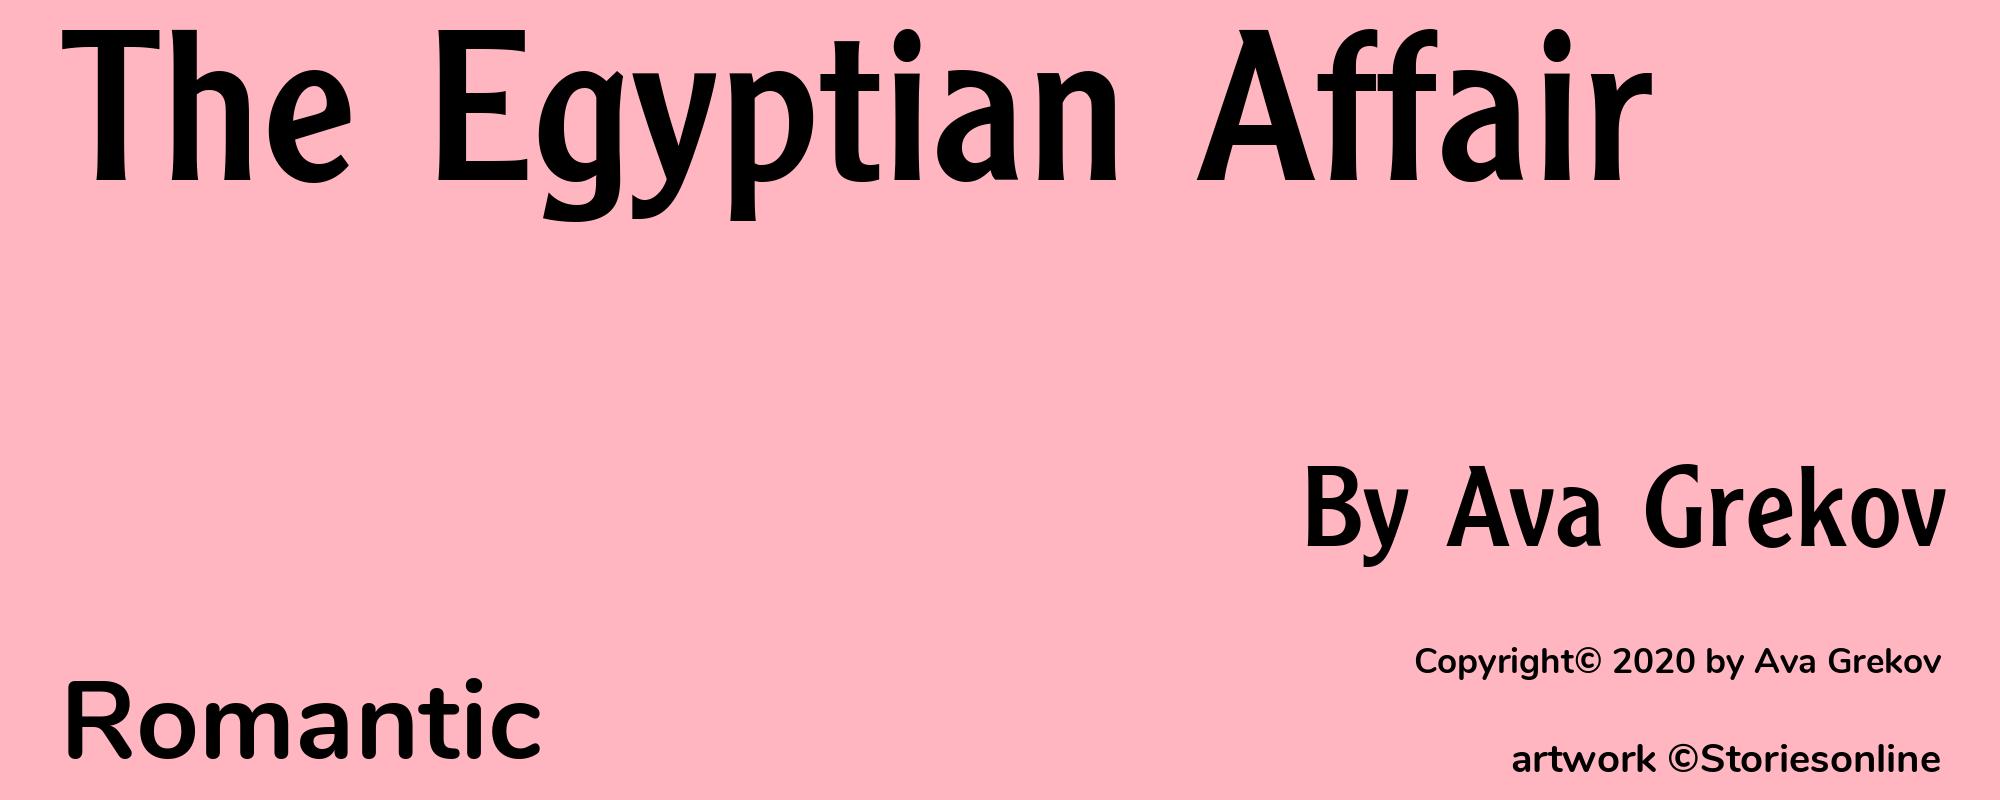 The Egyptian Affair - Cover